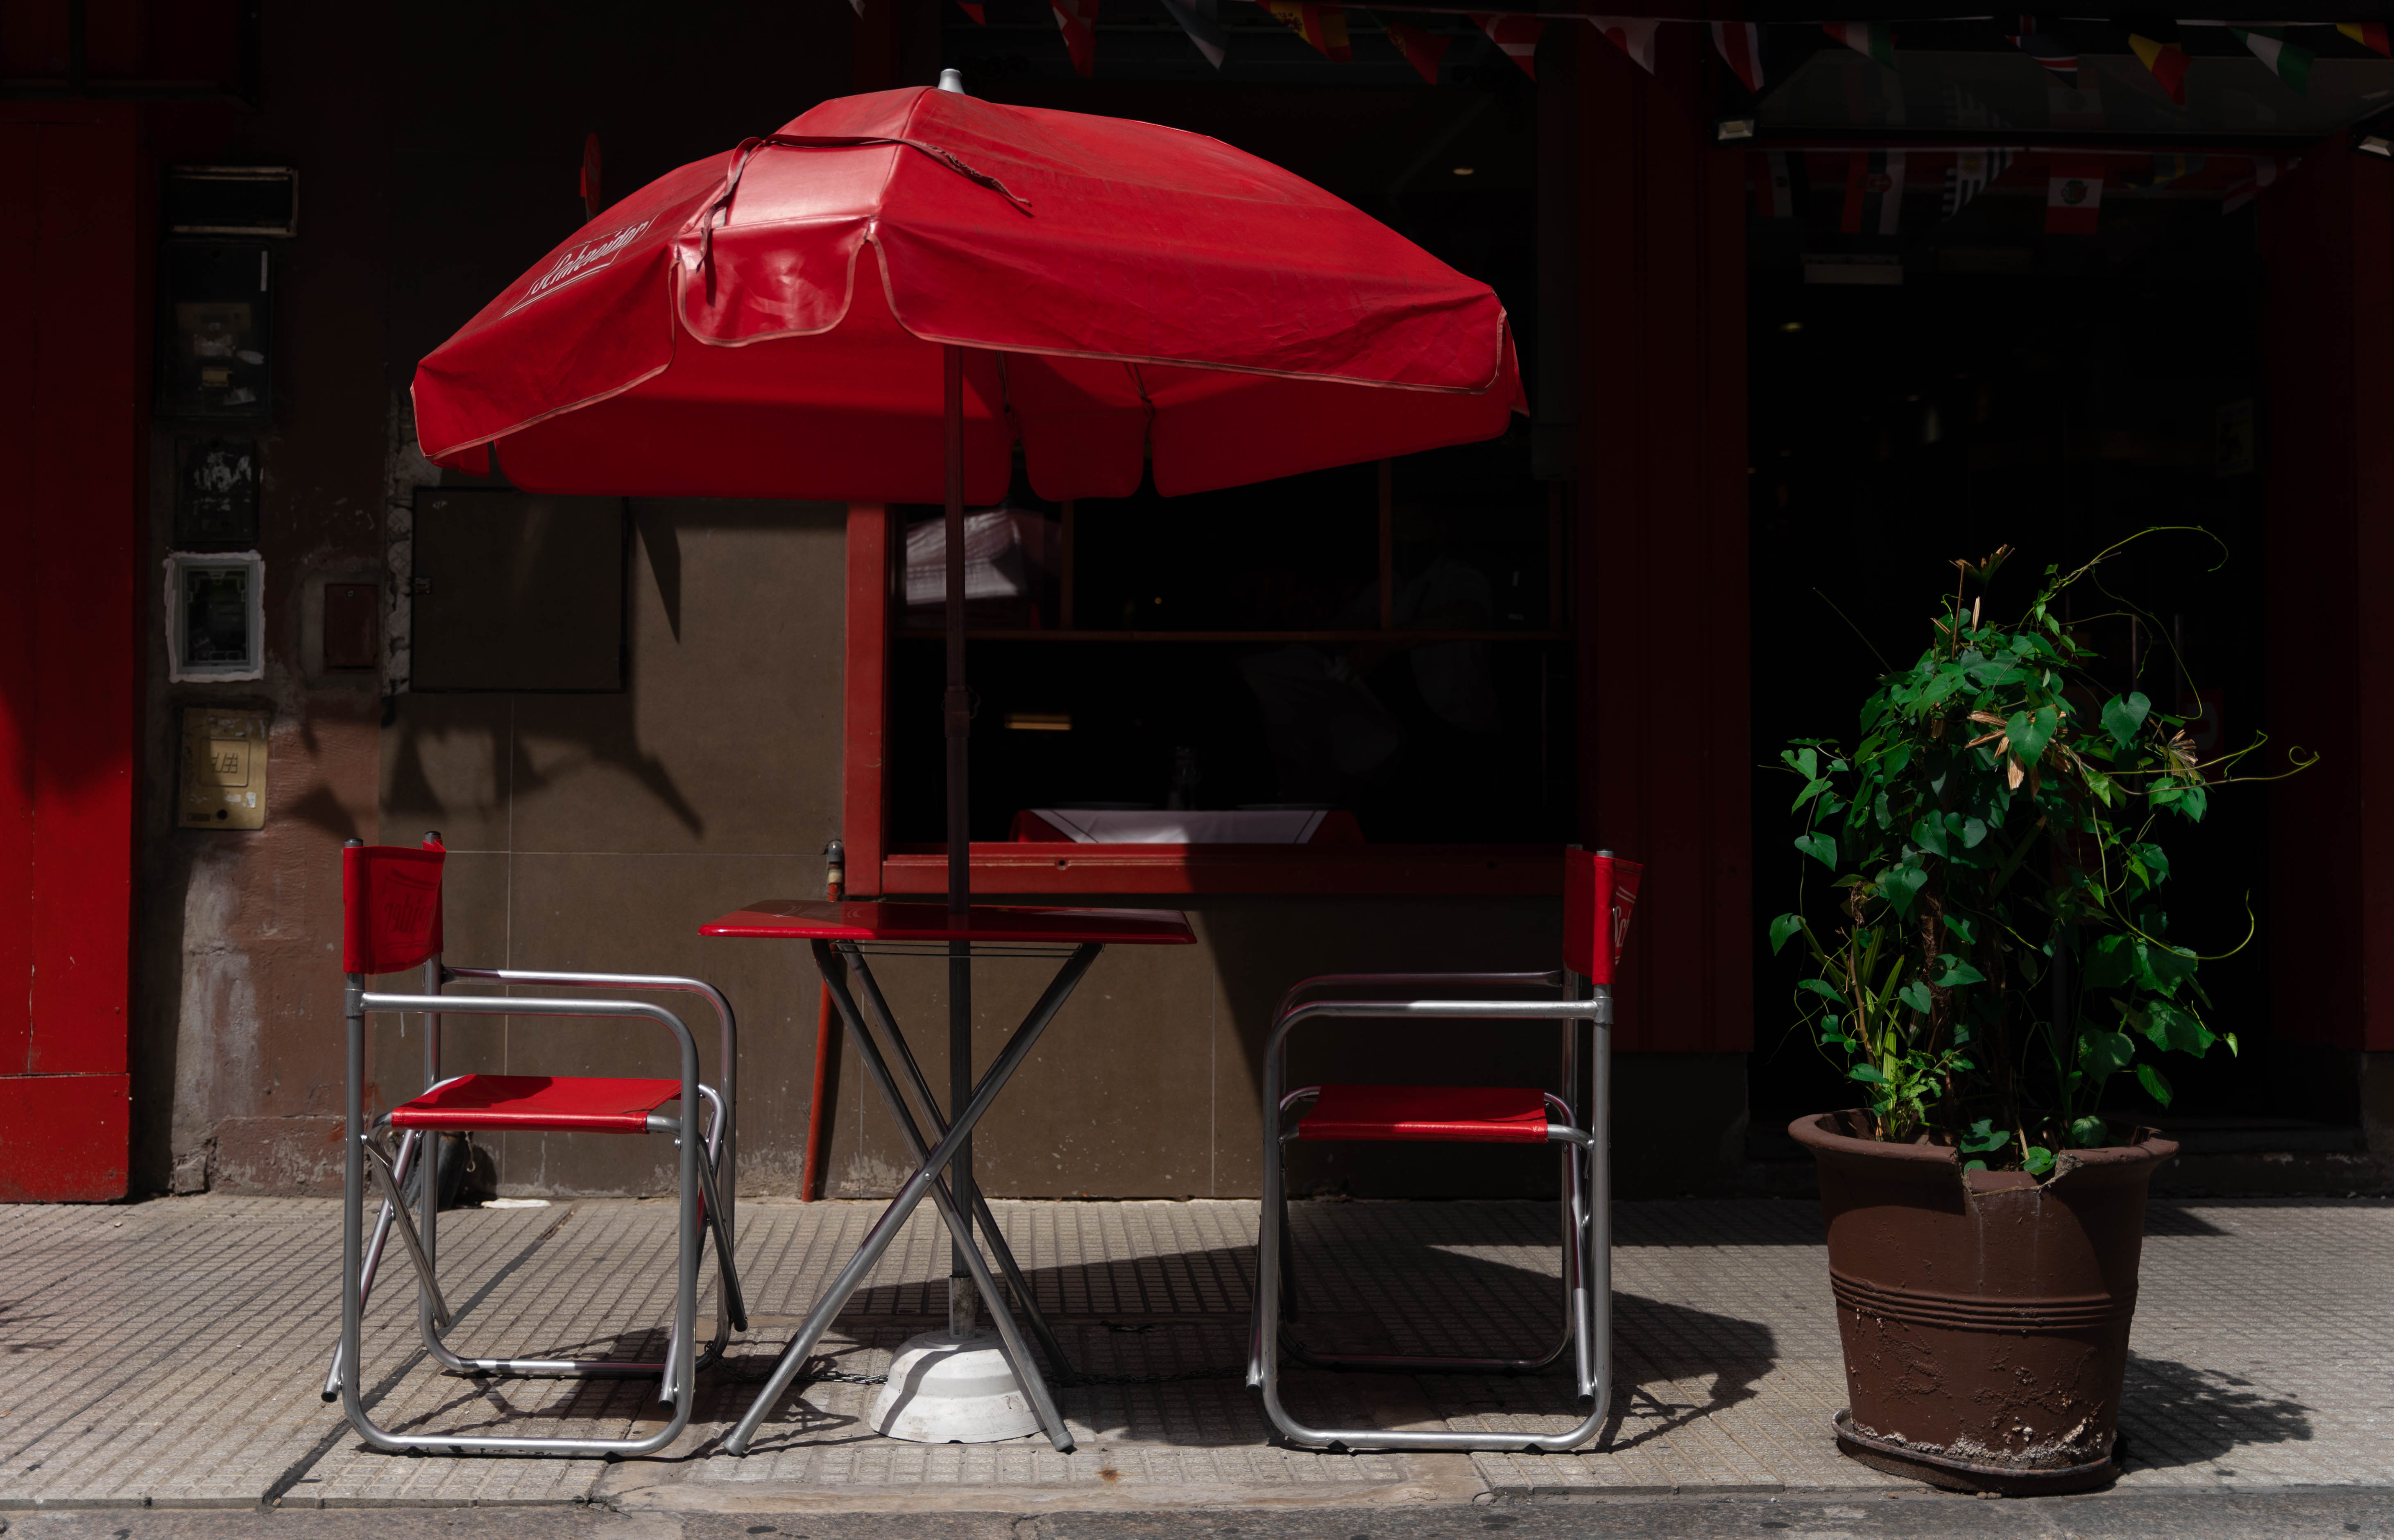 Mesa afuera del histórico restaurante Pepito, que sigue abierto en Montevideo 383 desde el año 1950. (Foto: Franco Fafasuli)